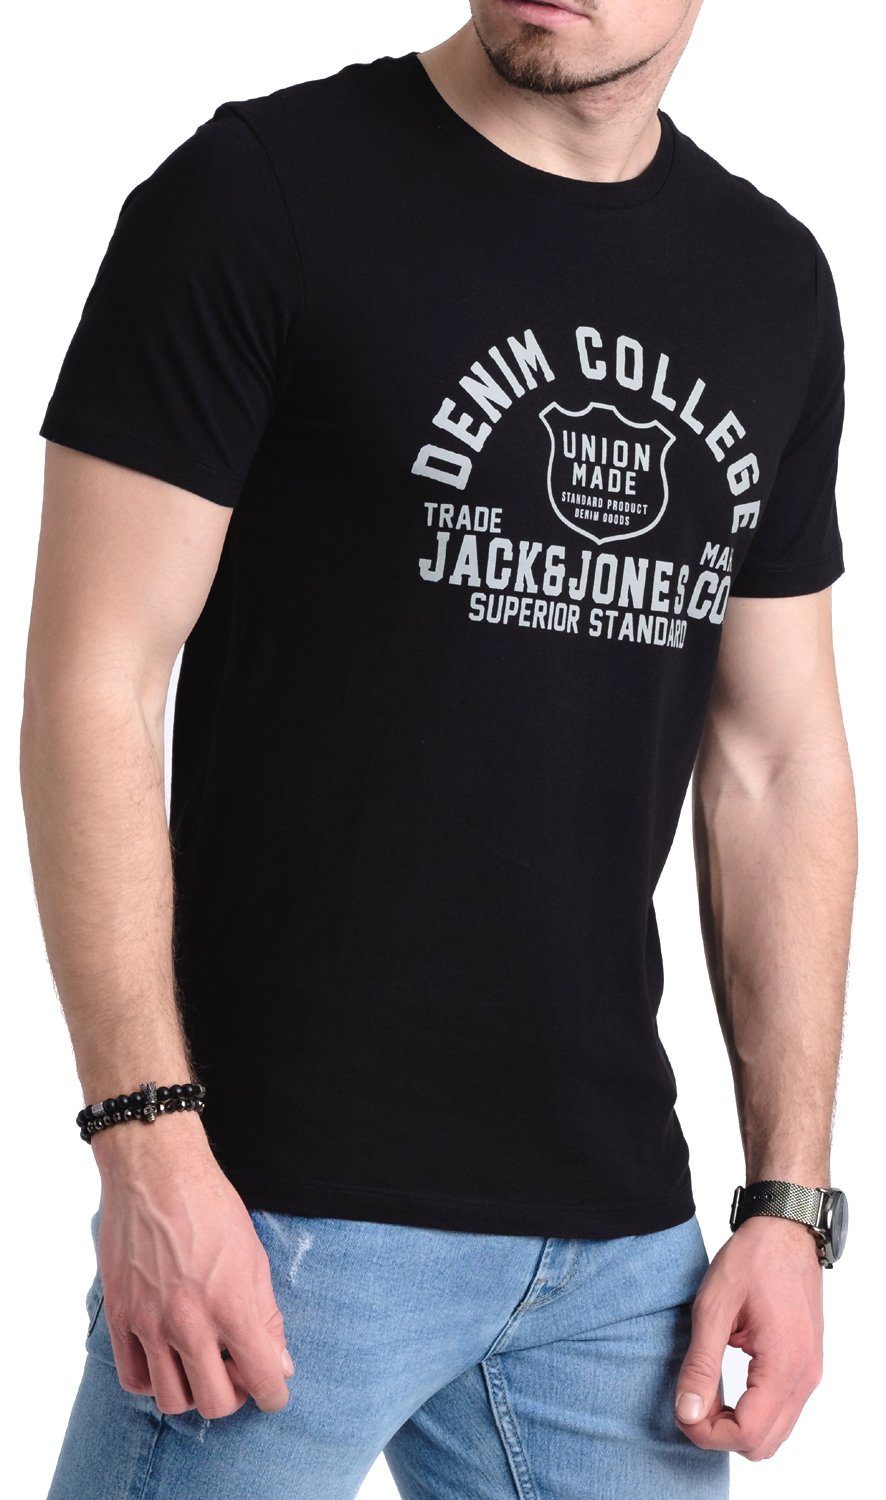 Aufdruck 4 aus Print-Shirt & Baumwolle Jones Jack OPT mit T-Shirt